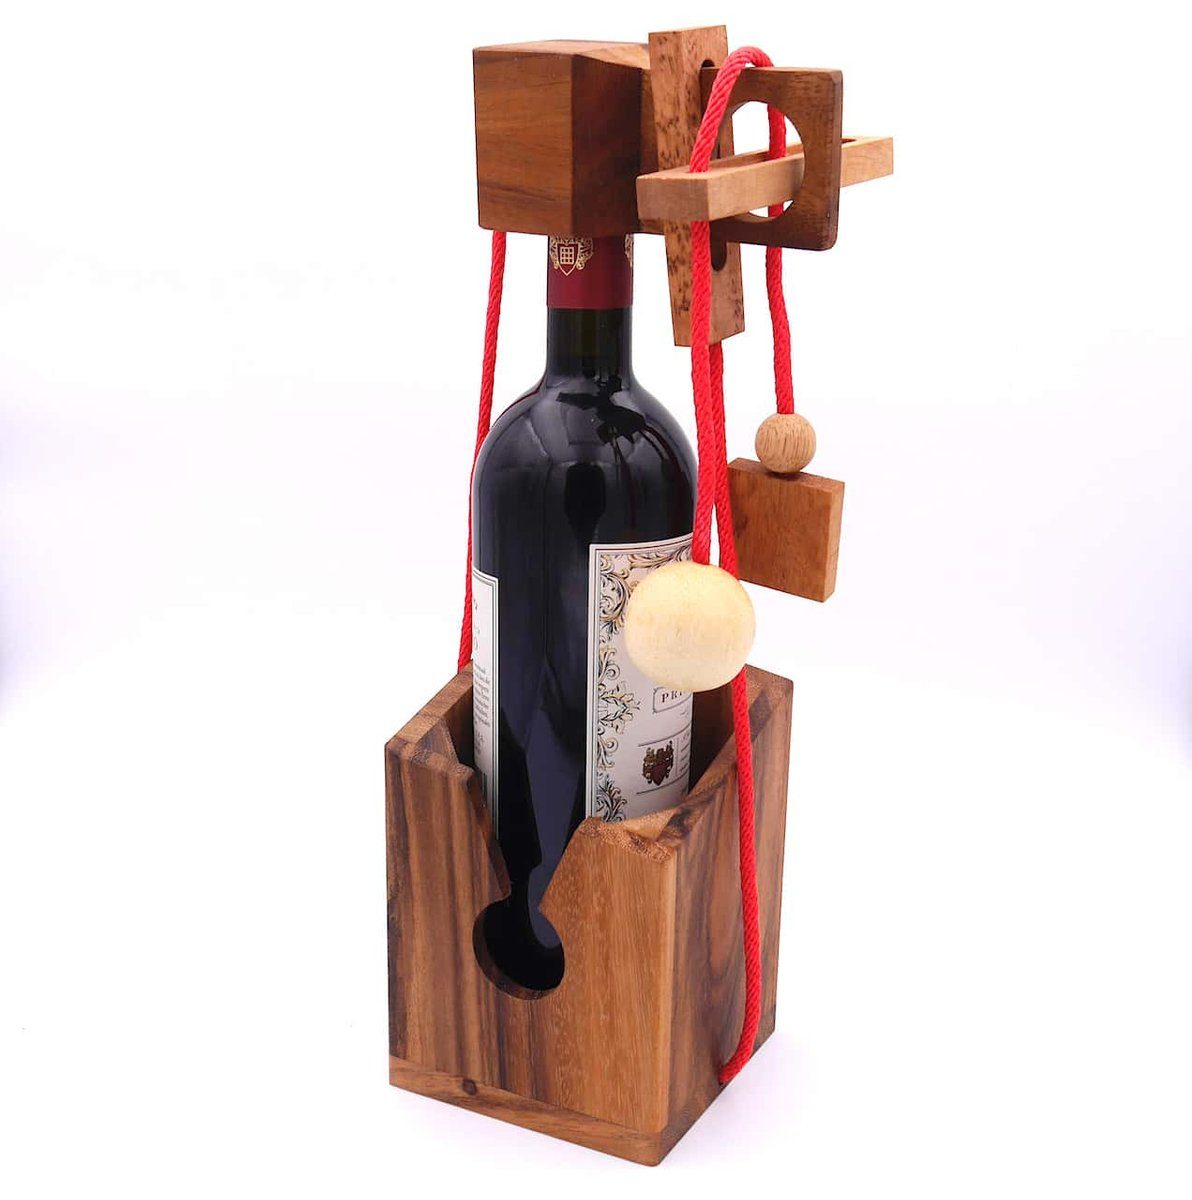 Denkspiele für Flaschentresor ROMBOL Holz Flaschen, rotes dunkles Geschenkverpackung Spiel, wiederverwendbar – Edles Denkspiel große Band Holz, aus